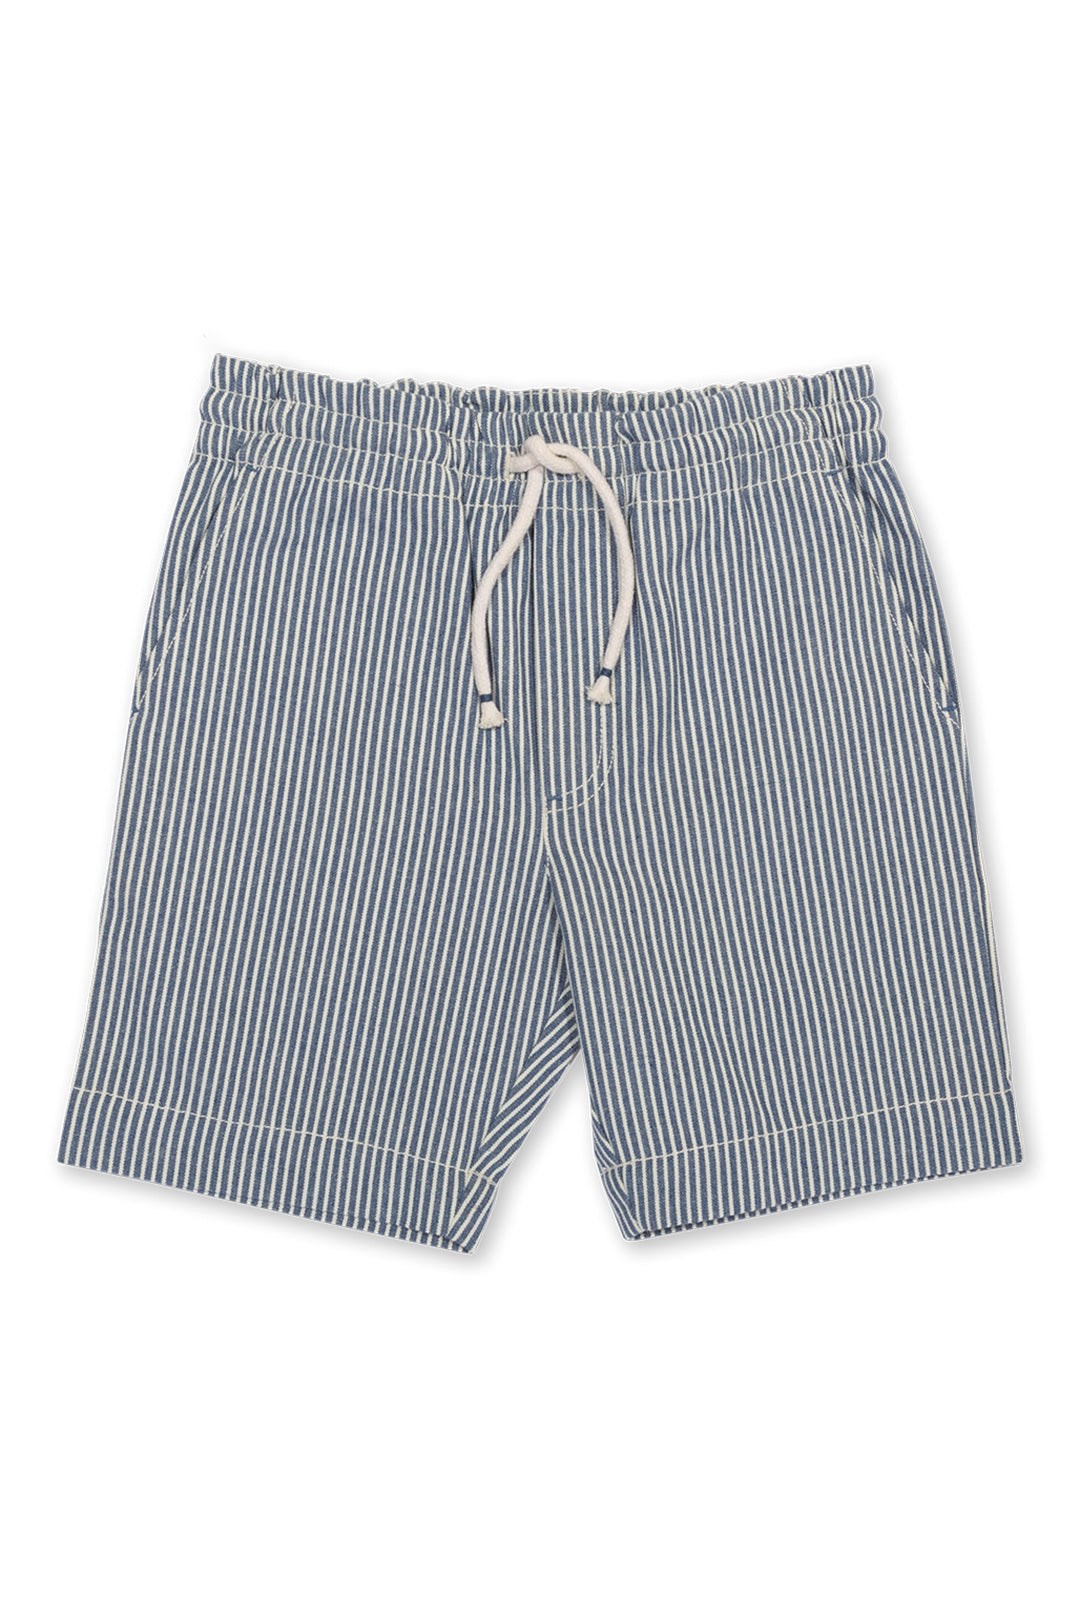 Ticking Baby/Kids Organic Cotton Shorts -